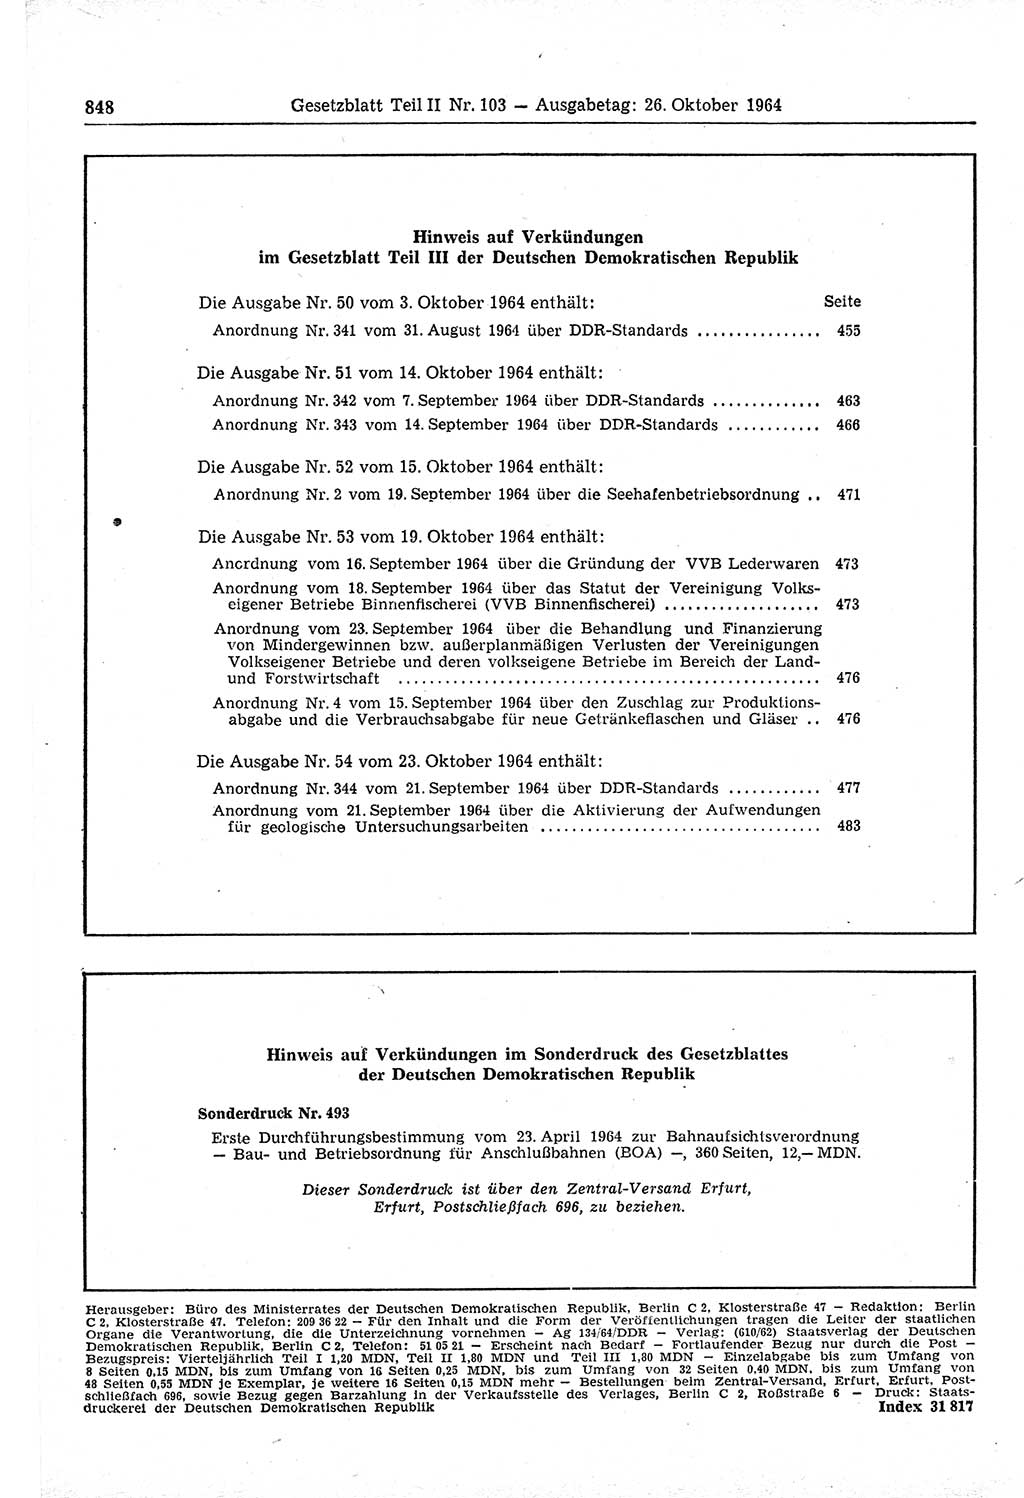 Gesetzblatt (GBl.) der Deutschen Demokratischen Republik (DDR) Teil ⅠⅠ 1964, Seite 848 (GBl. DDR ⅠⅠ 1964, S. 848)